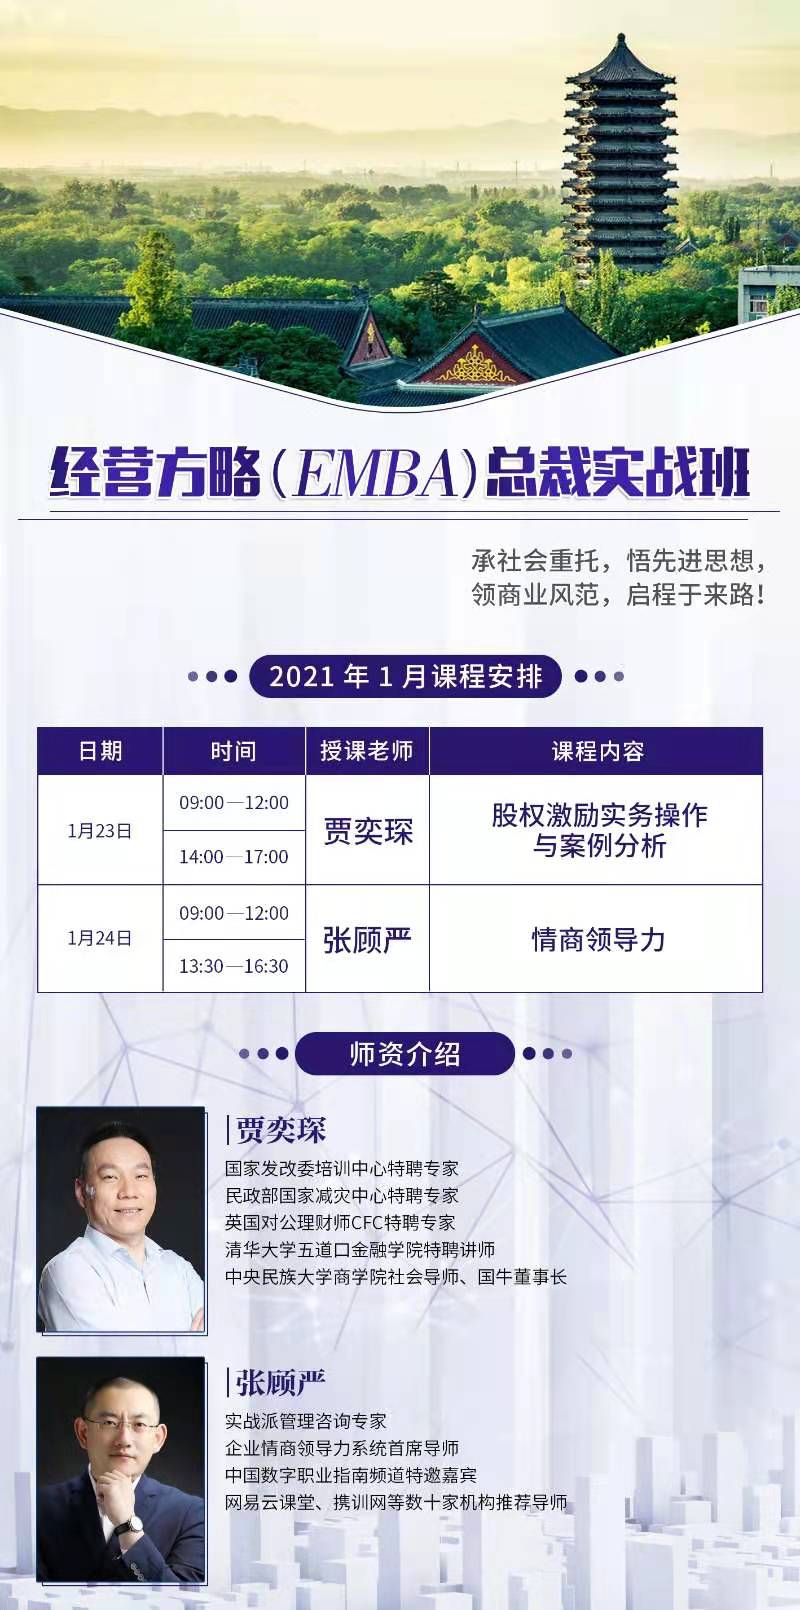 经营方略（EMBA）总裁实战班 2021年1月份开课通知